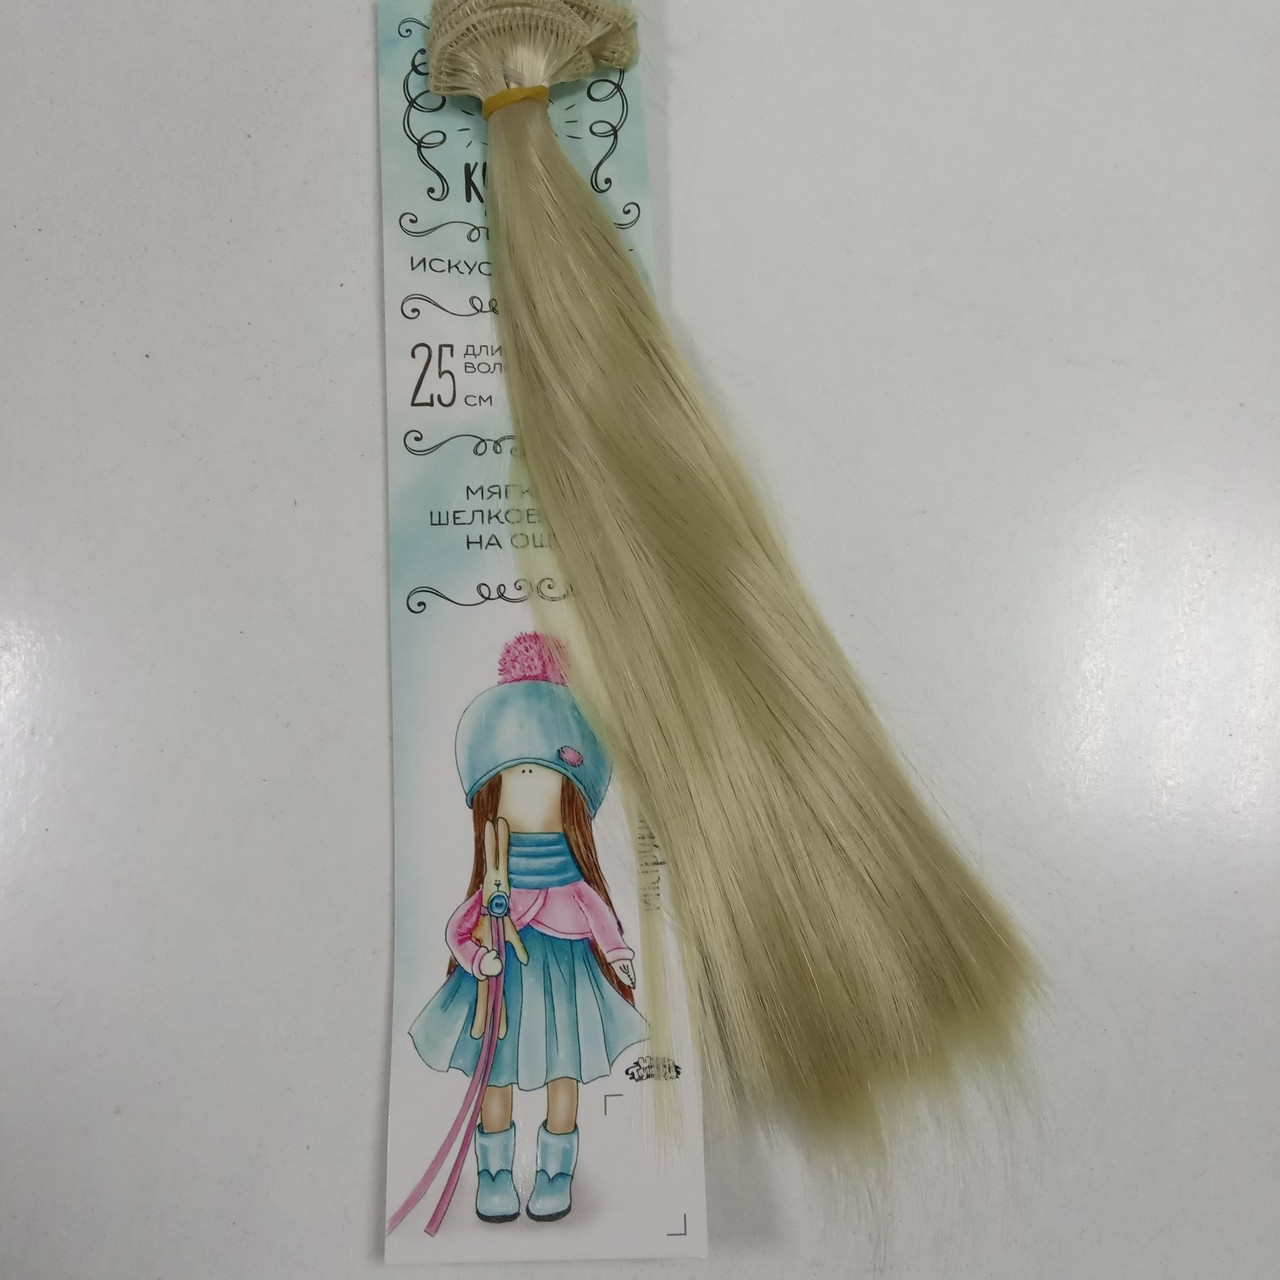 Волосы - тресс для кукол "Прямые" длина волос 25 см, ширина 100 см, цвет № 88